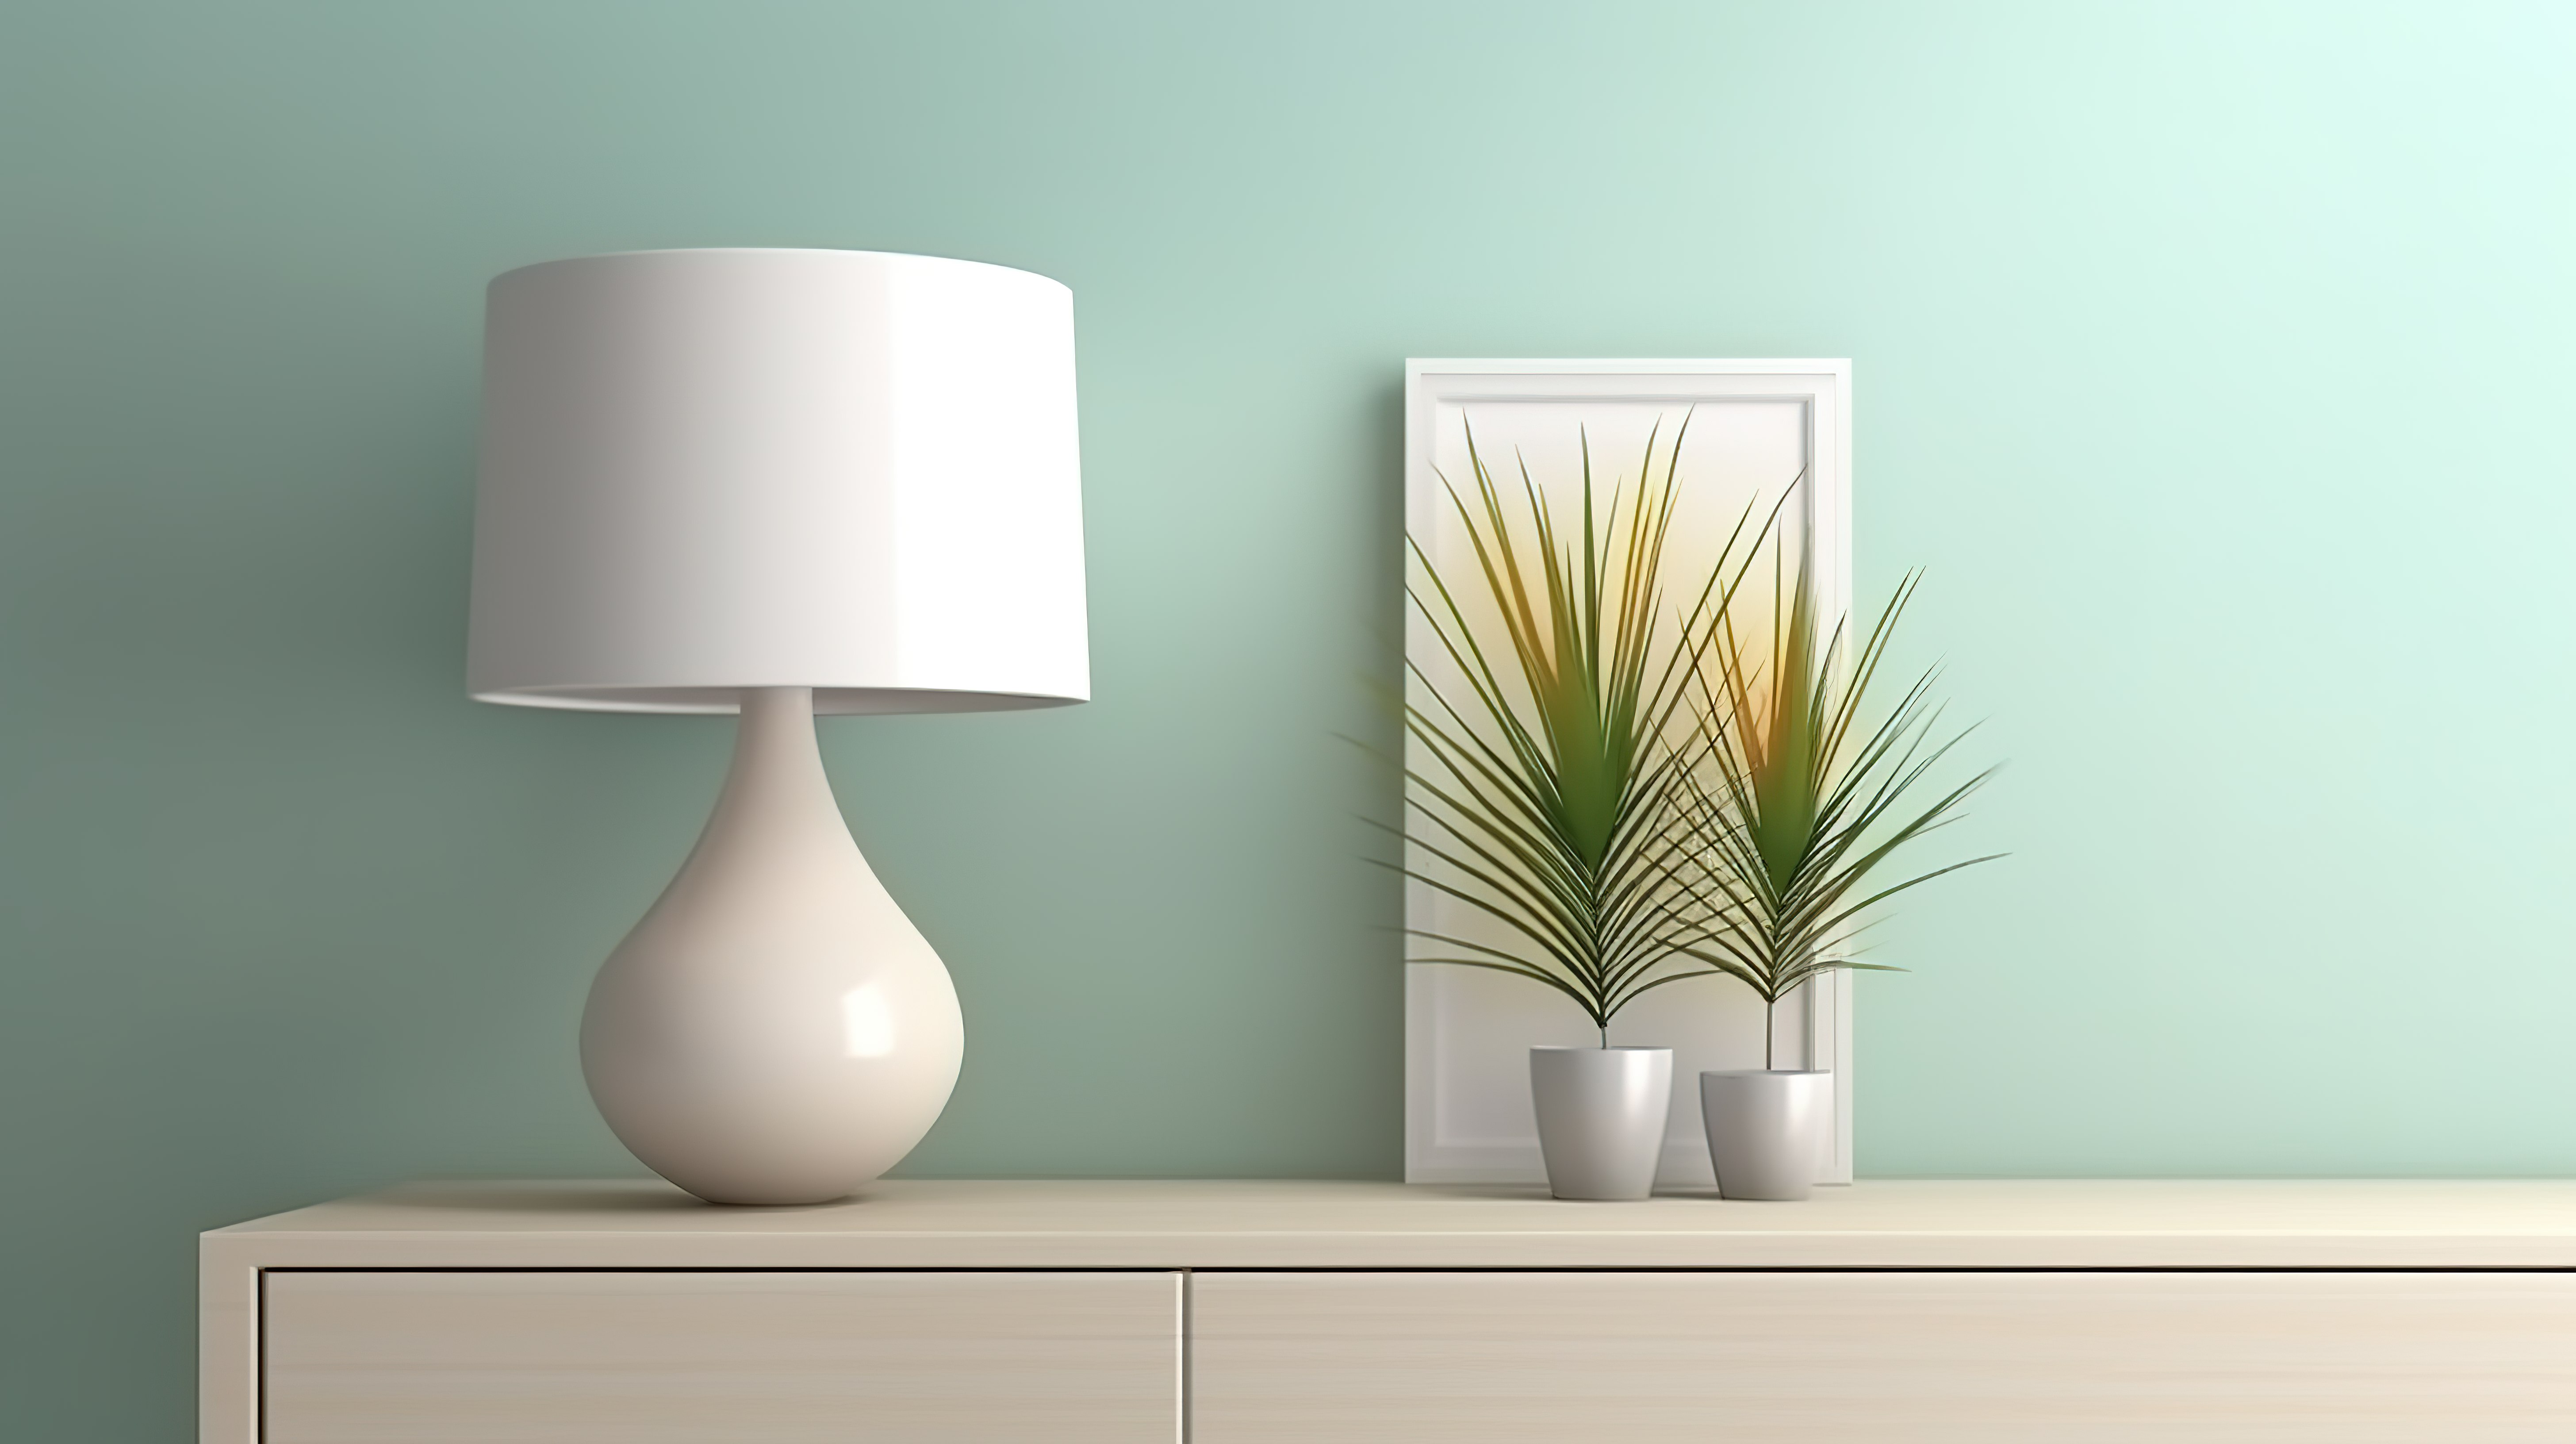 现代白灯照明柜与设计整齐的墙壁模型 3D 渲染图片